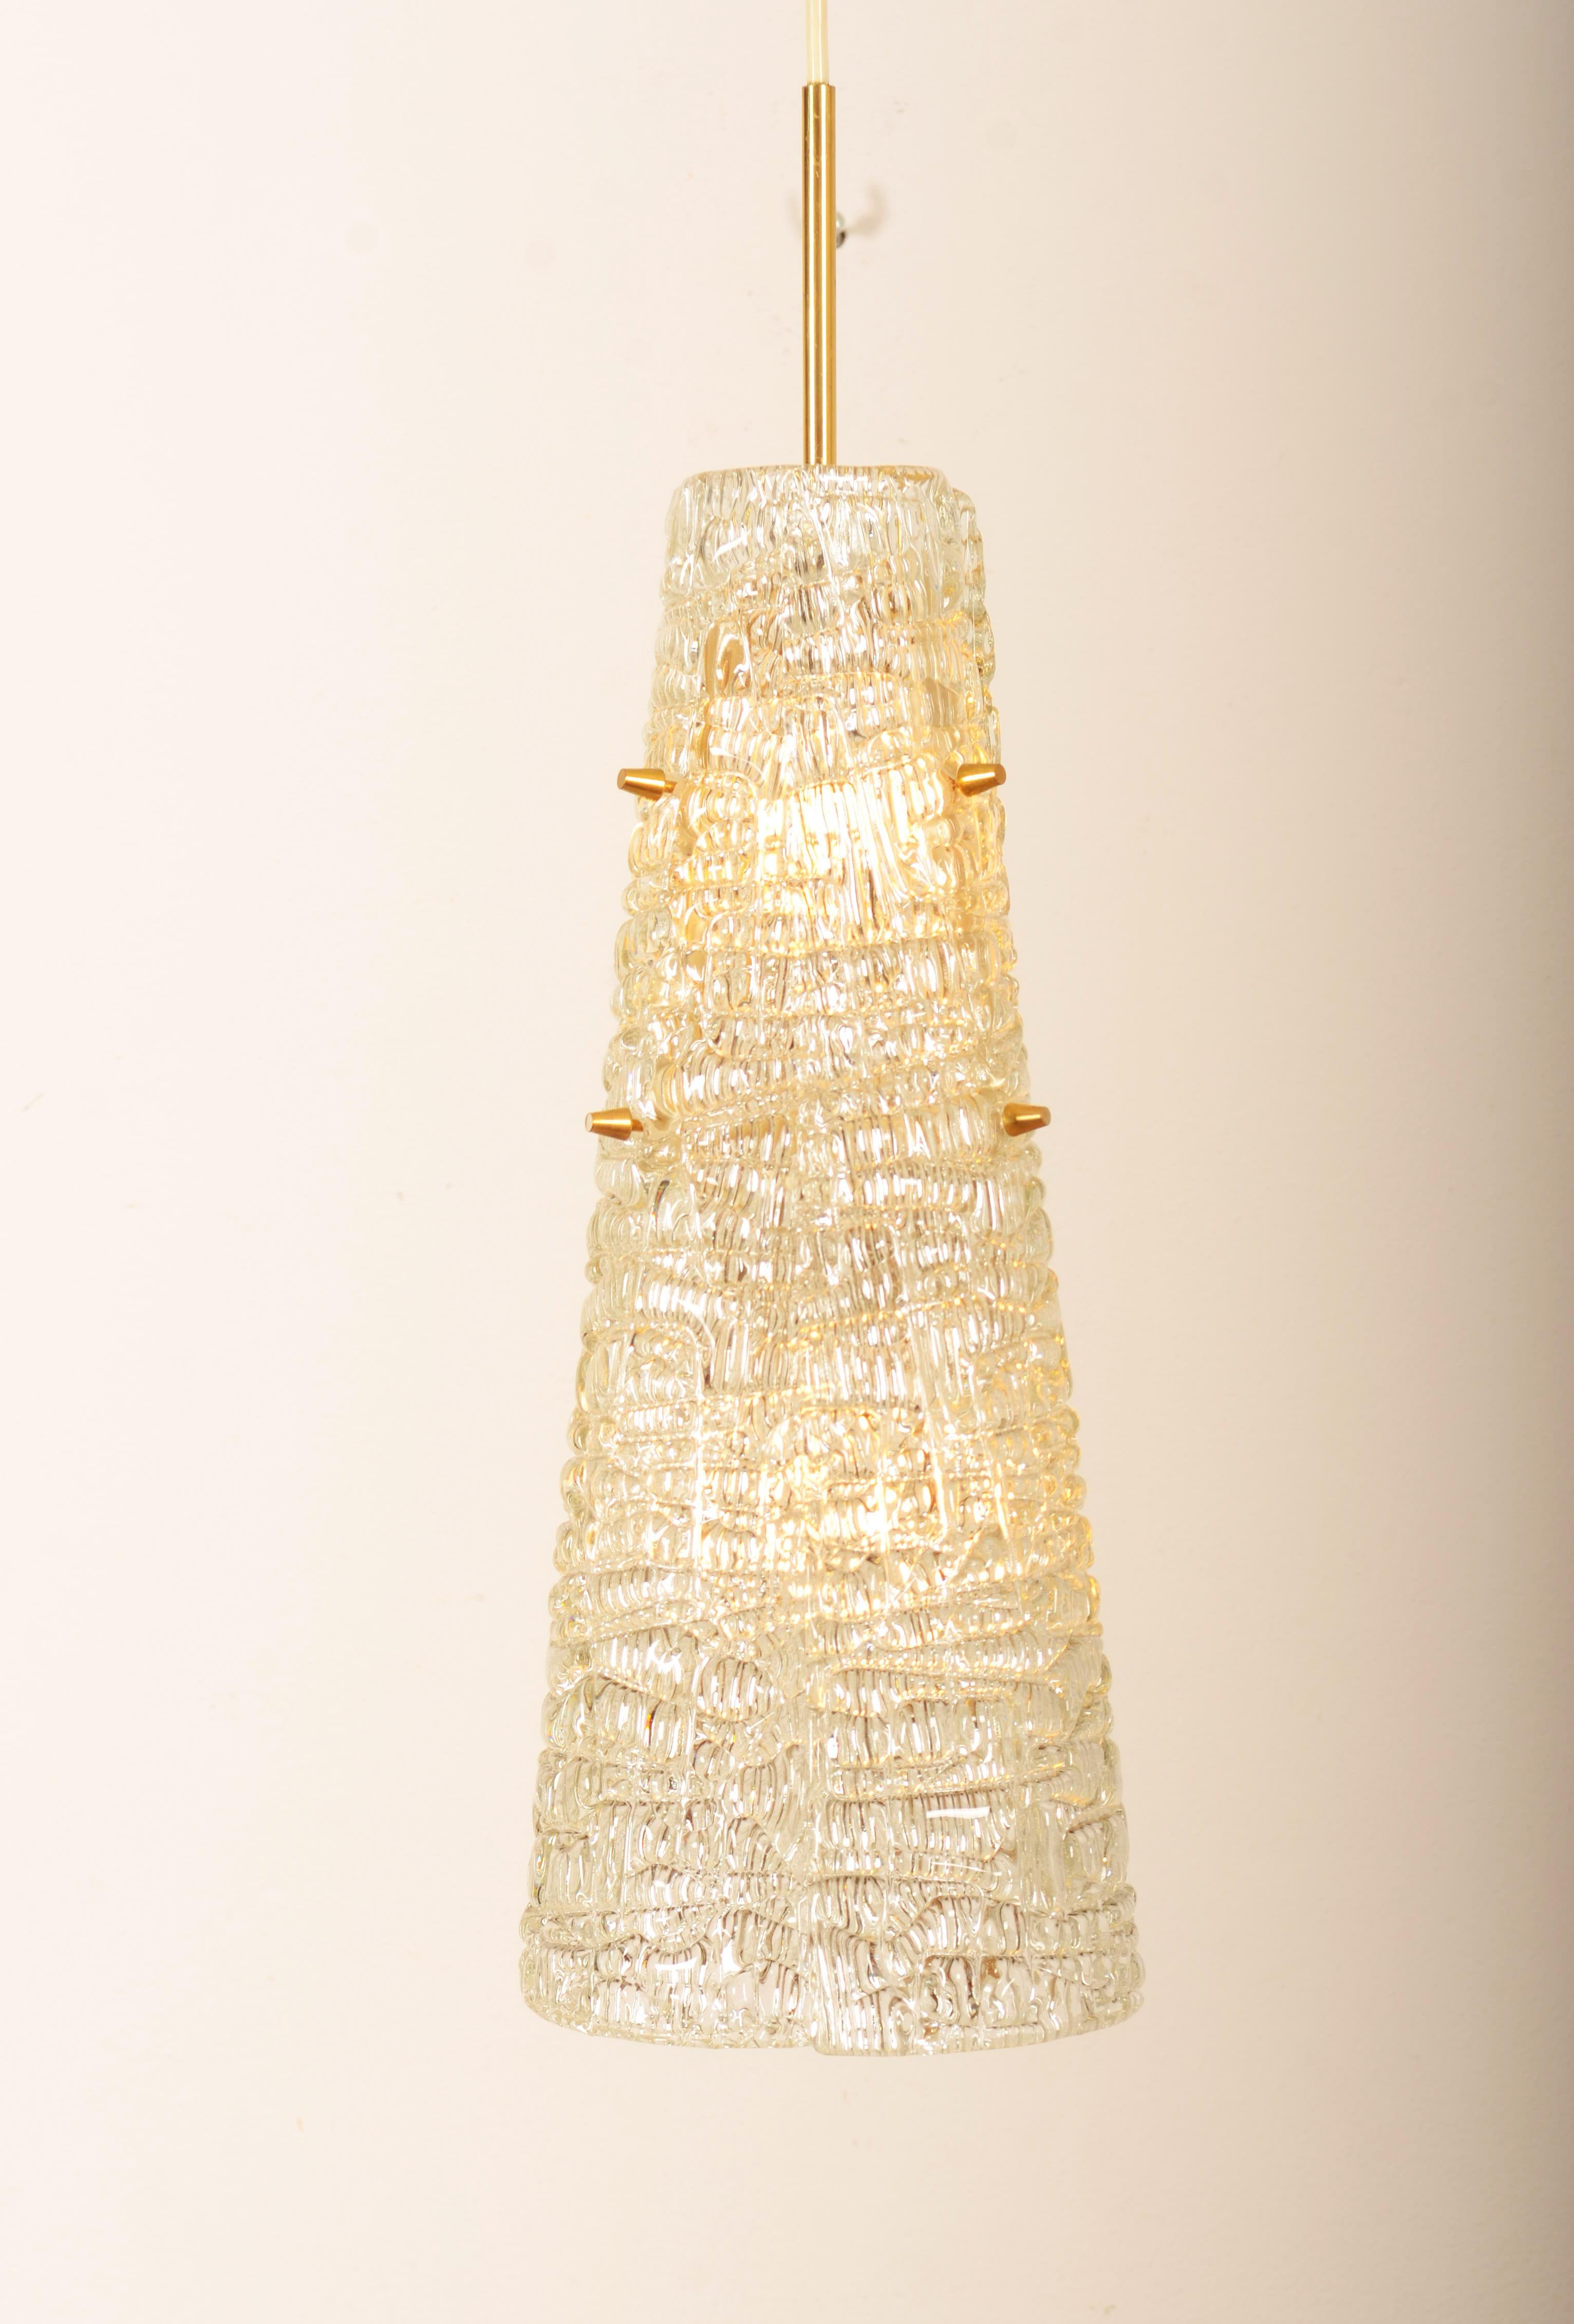 Messingrahmen mit einer E27- und einer E14-Fassung, drei Glaselemente aus Kristall-Eis. Entworfen von J.T. Kalmar in den 1950er Jahren.
Gesamtlänge 140cm (47.24in) Länge der Lampe nur 58cm.